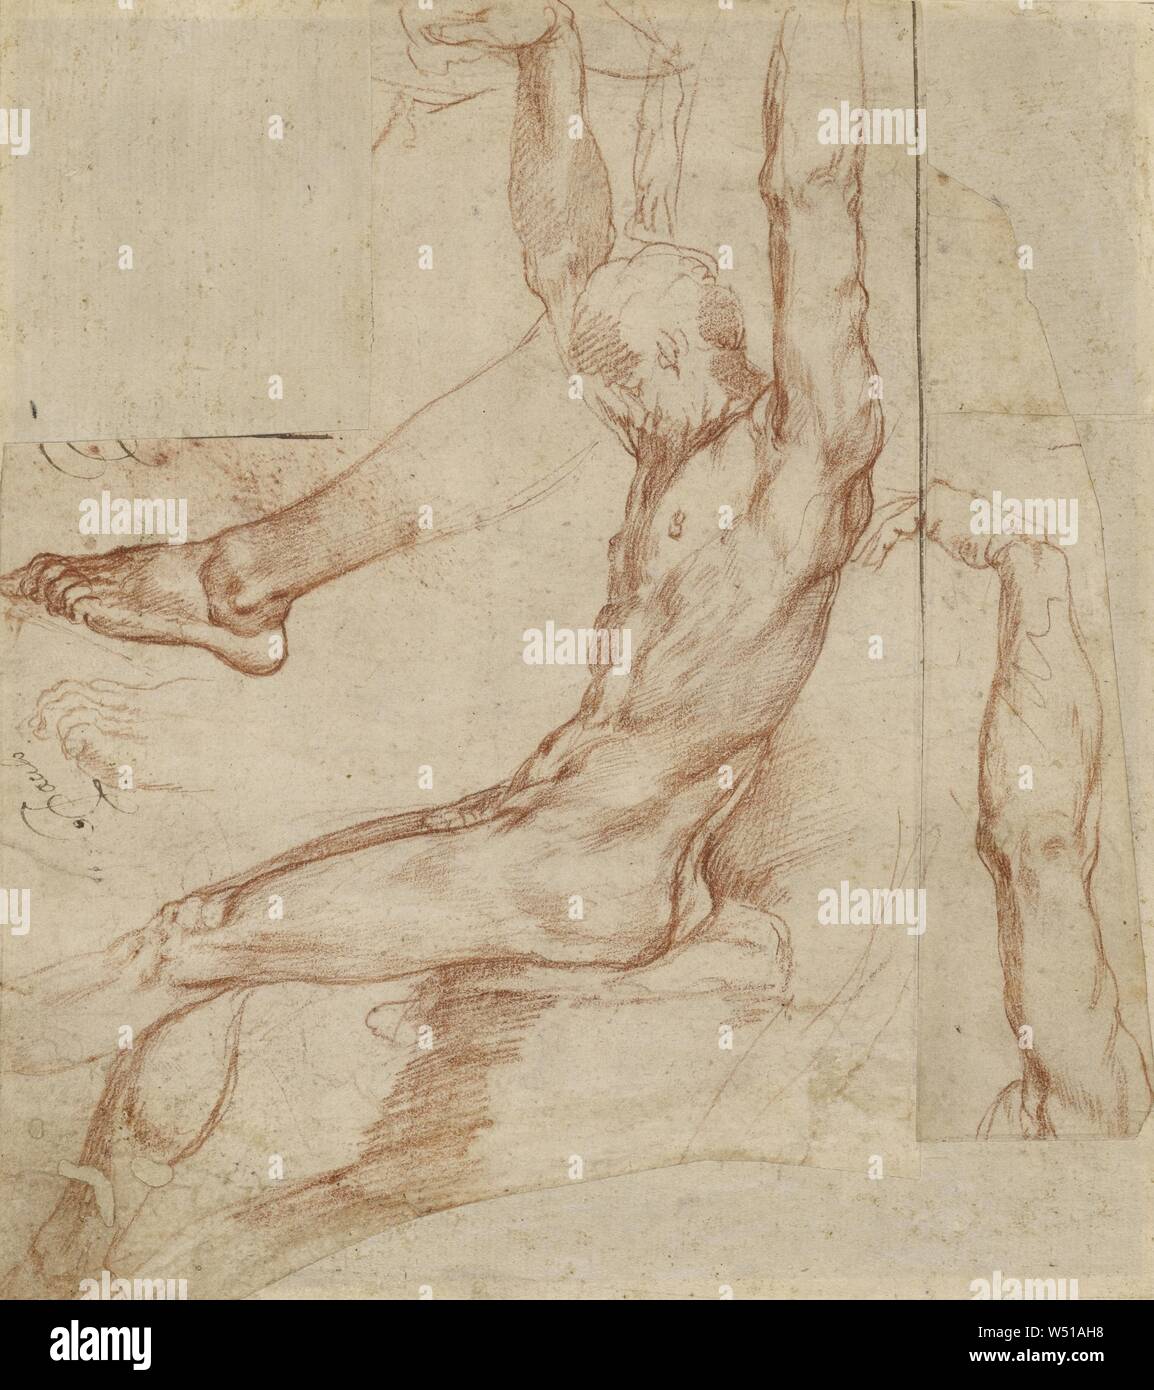 Étude d'un homme avec diverses ébauches (recto), de l'étude d'un homme drapé de la jambe (verso), Polidoro da Caravaggio (Polidoro Caldara), Italien (1495/1500 - 1543), à propos de l'Italie, environ 1535, craie rouge (recto), craie noire (verso), 20,6 x 18,4 cm (8 1/8 x 7 1/4 in Banque D'Images